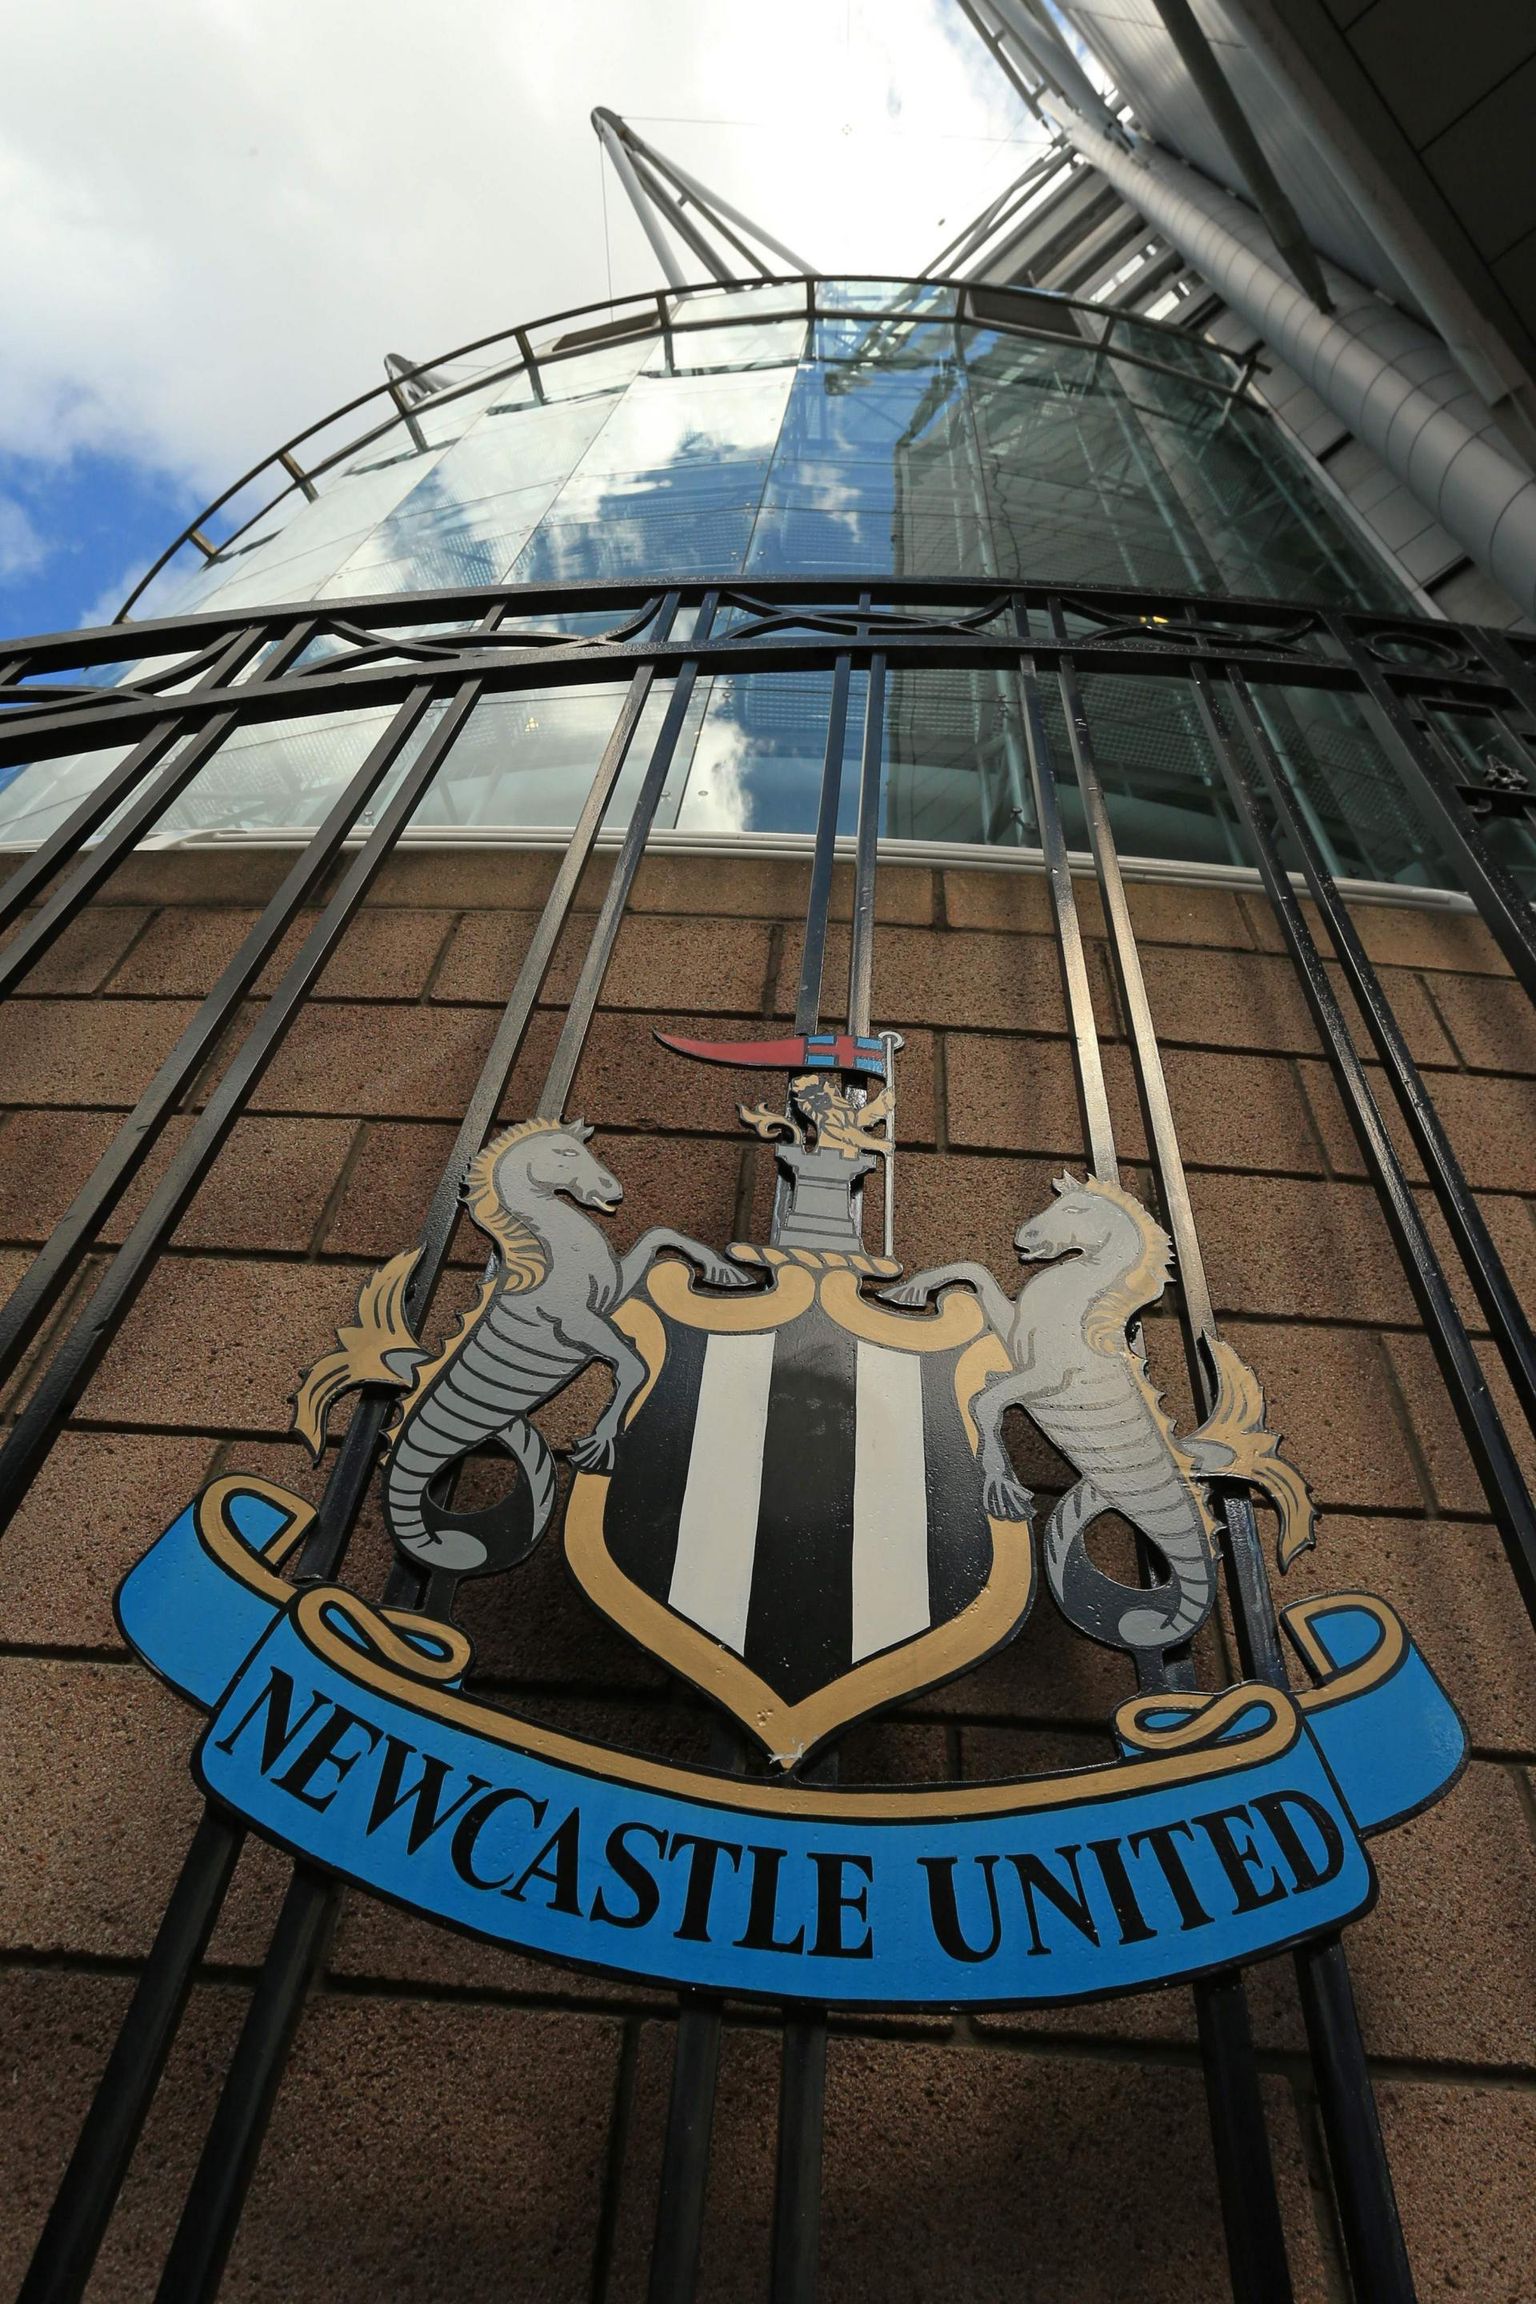 Newcastle Unitedit on ees ootamas suur muutus. Fännid loodavad, et klubi rühib nüüd ülesmäge.